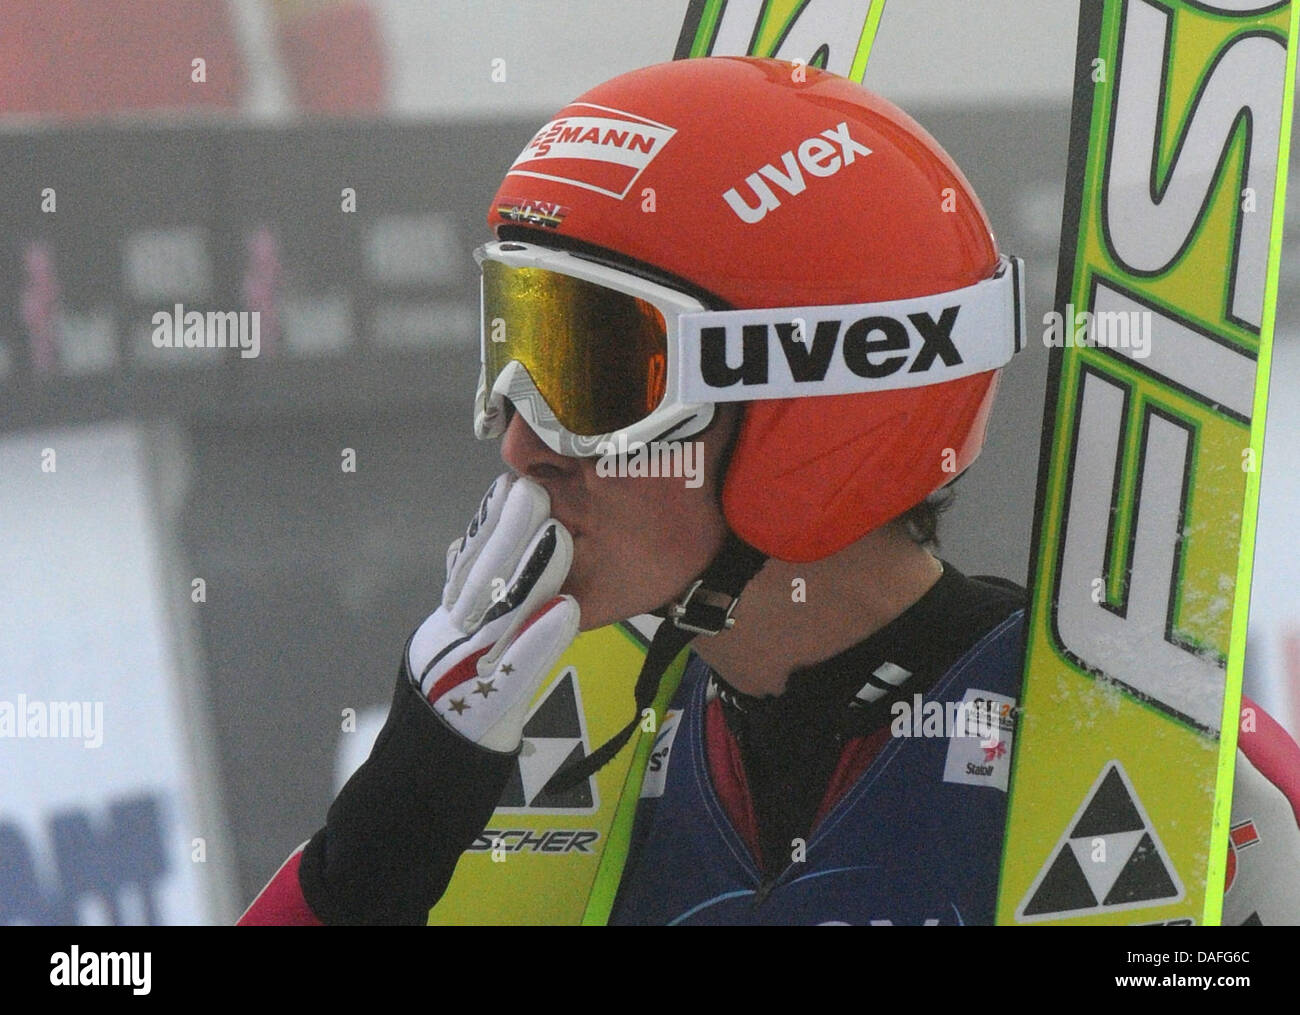 Primer puesto Eric Frenzel de Alemania reacciona el salto de esquí nórdico combinado del evento en los Campeonatos del Mundo de Esquí Nórdico en Oslo, Noruega, 26 de febrero de 2011. Foto: Patrick Seeger dpa Foto de stock